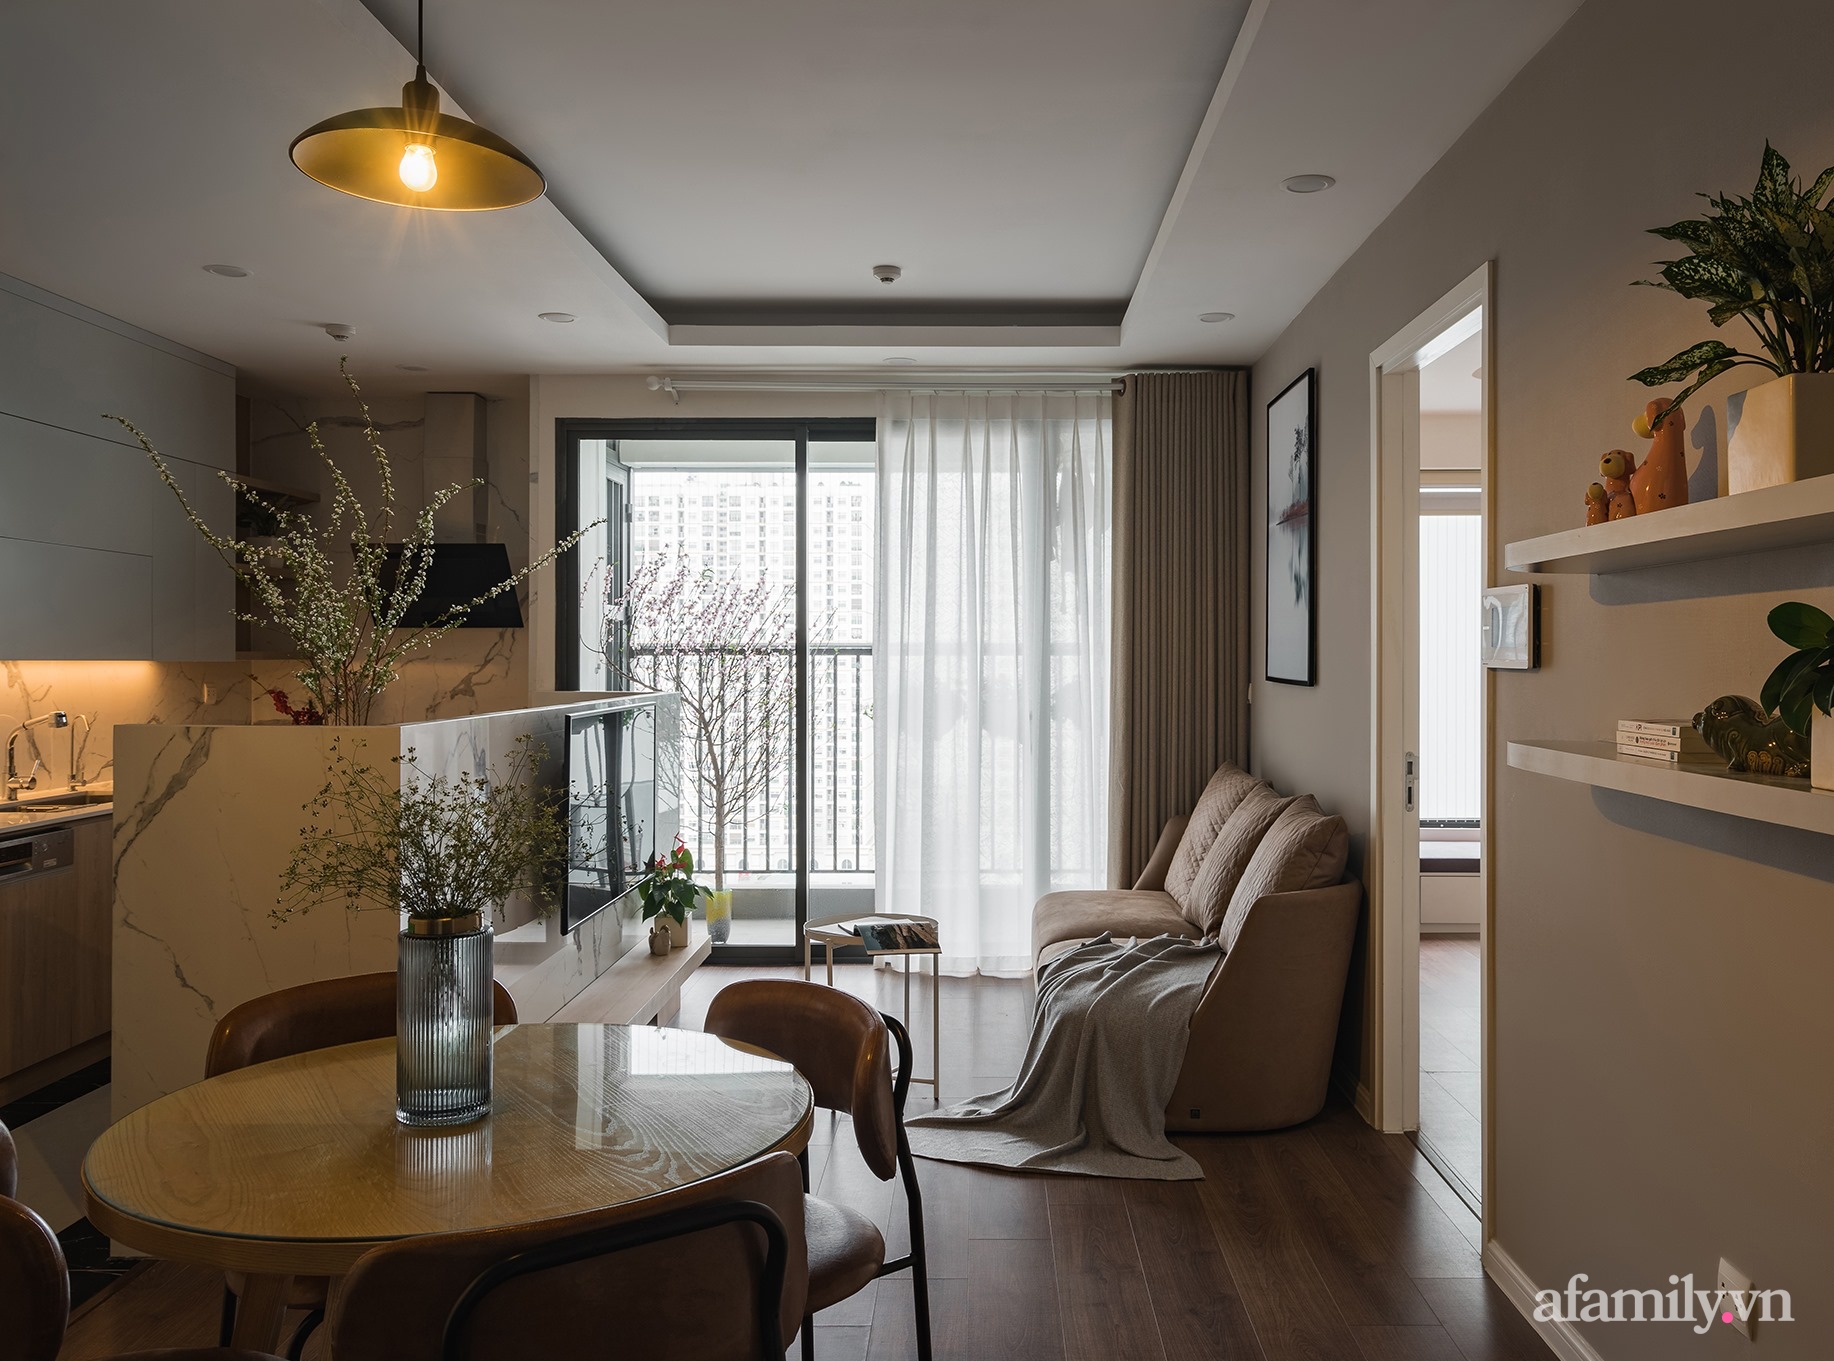 Ngắm căn hộ nhỏ &quot;lên thực tế còn đẹp hơn 3D&quot; ở chung cư Imperia Sky Garden Minh Khai, Hà Nội - Ảnh 2.